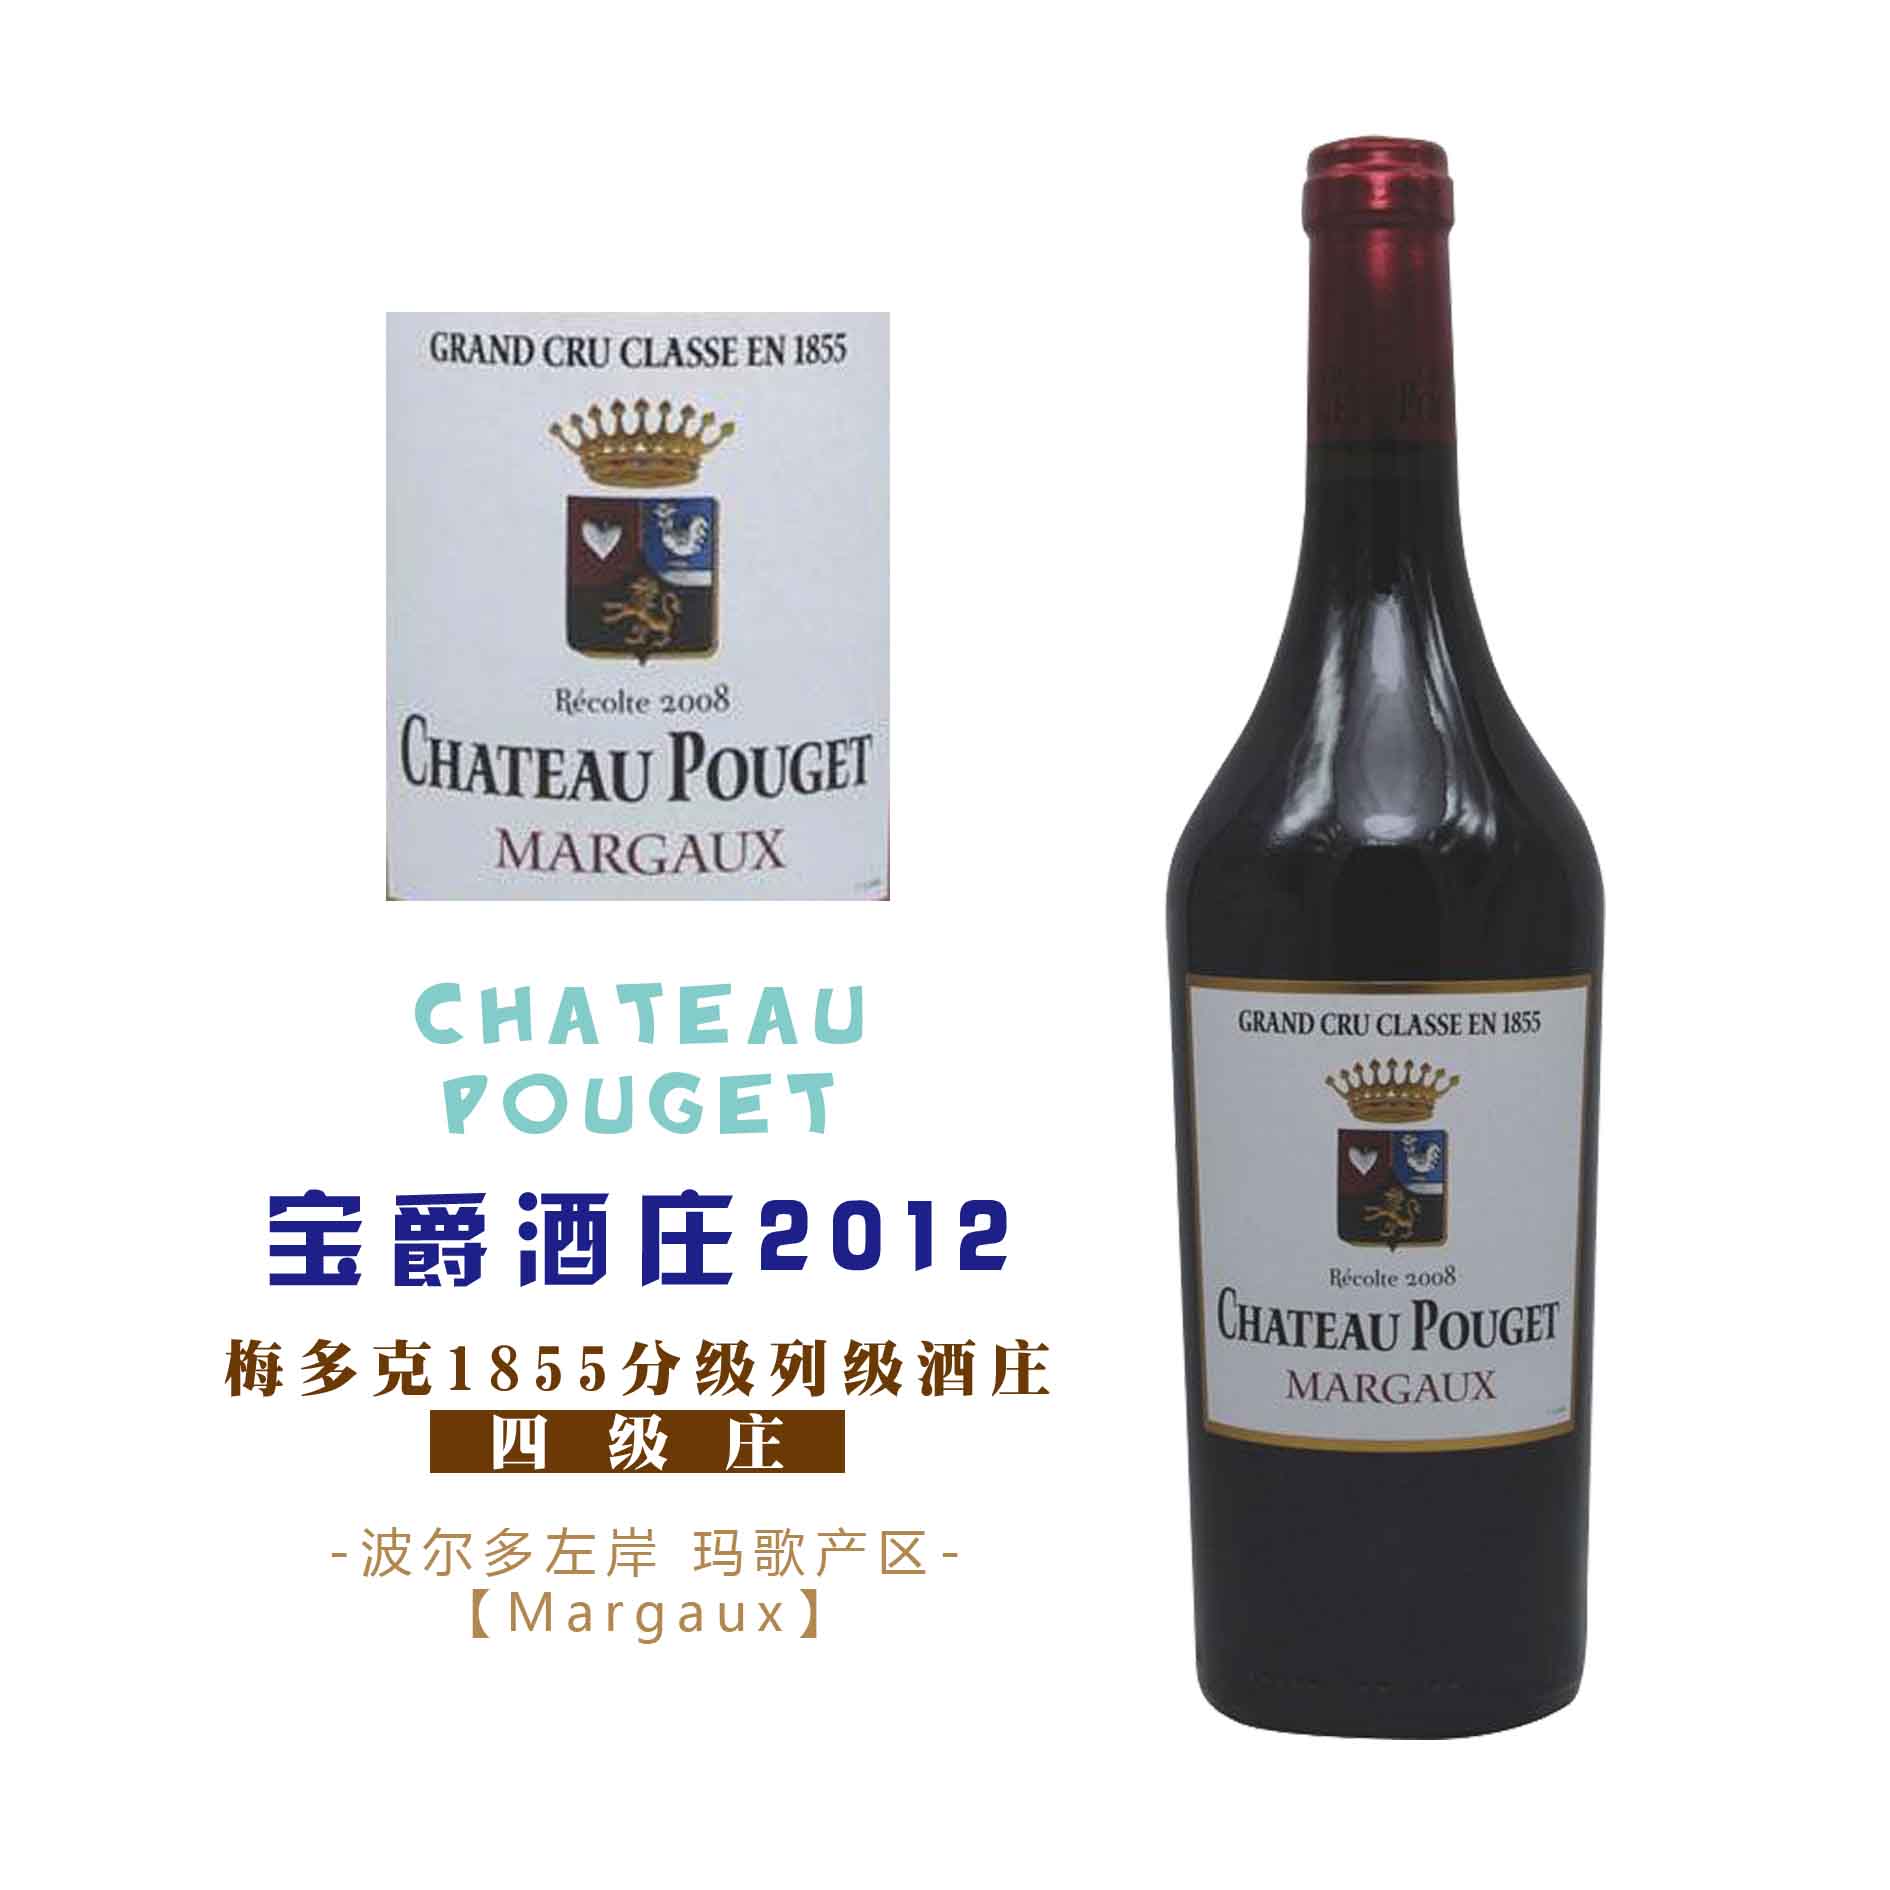 【限量发售】宝爵酒庄干红葡萄酒2012 chateau pouget,margaux,france